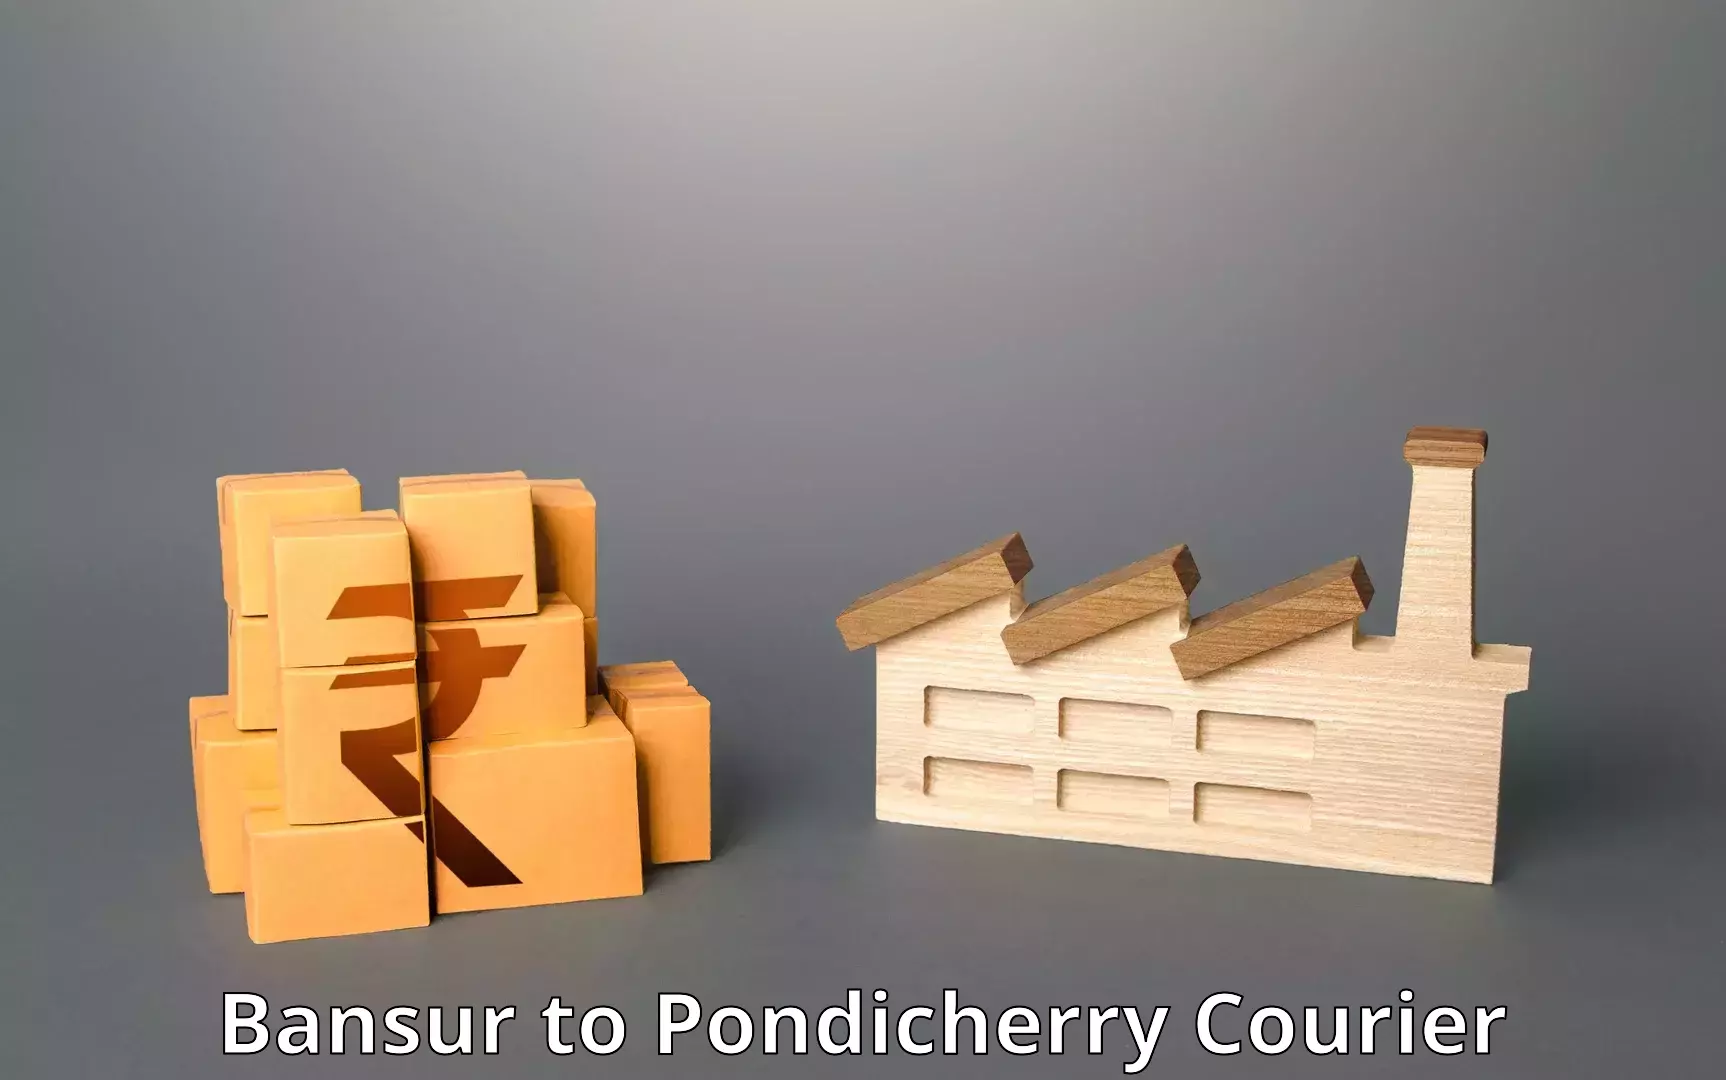 High-speed parcel service Bansur to Pondicherry